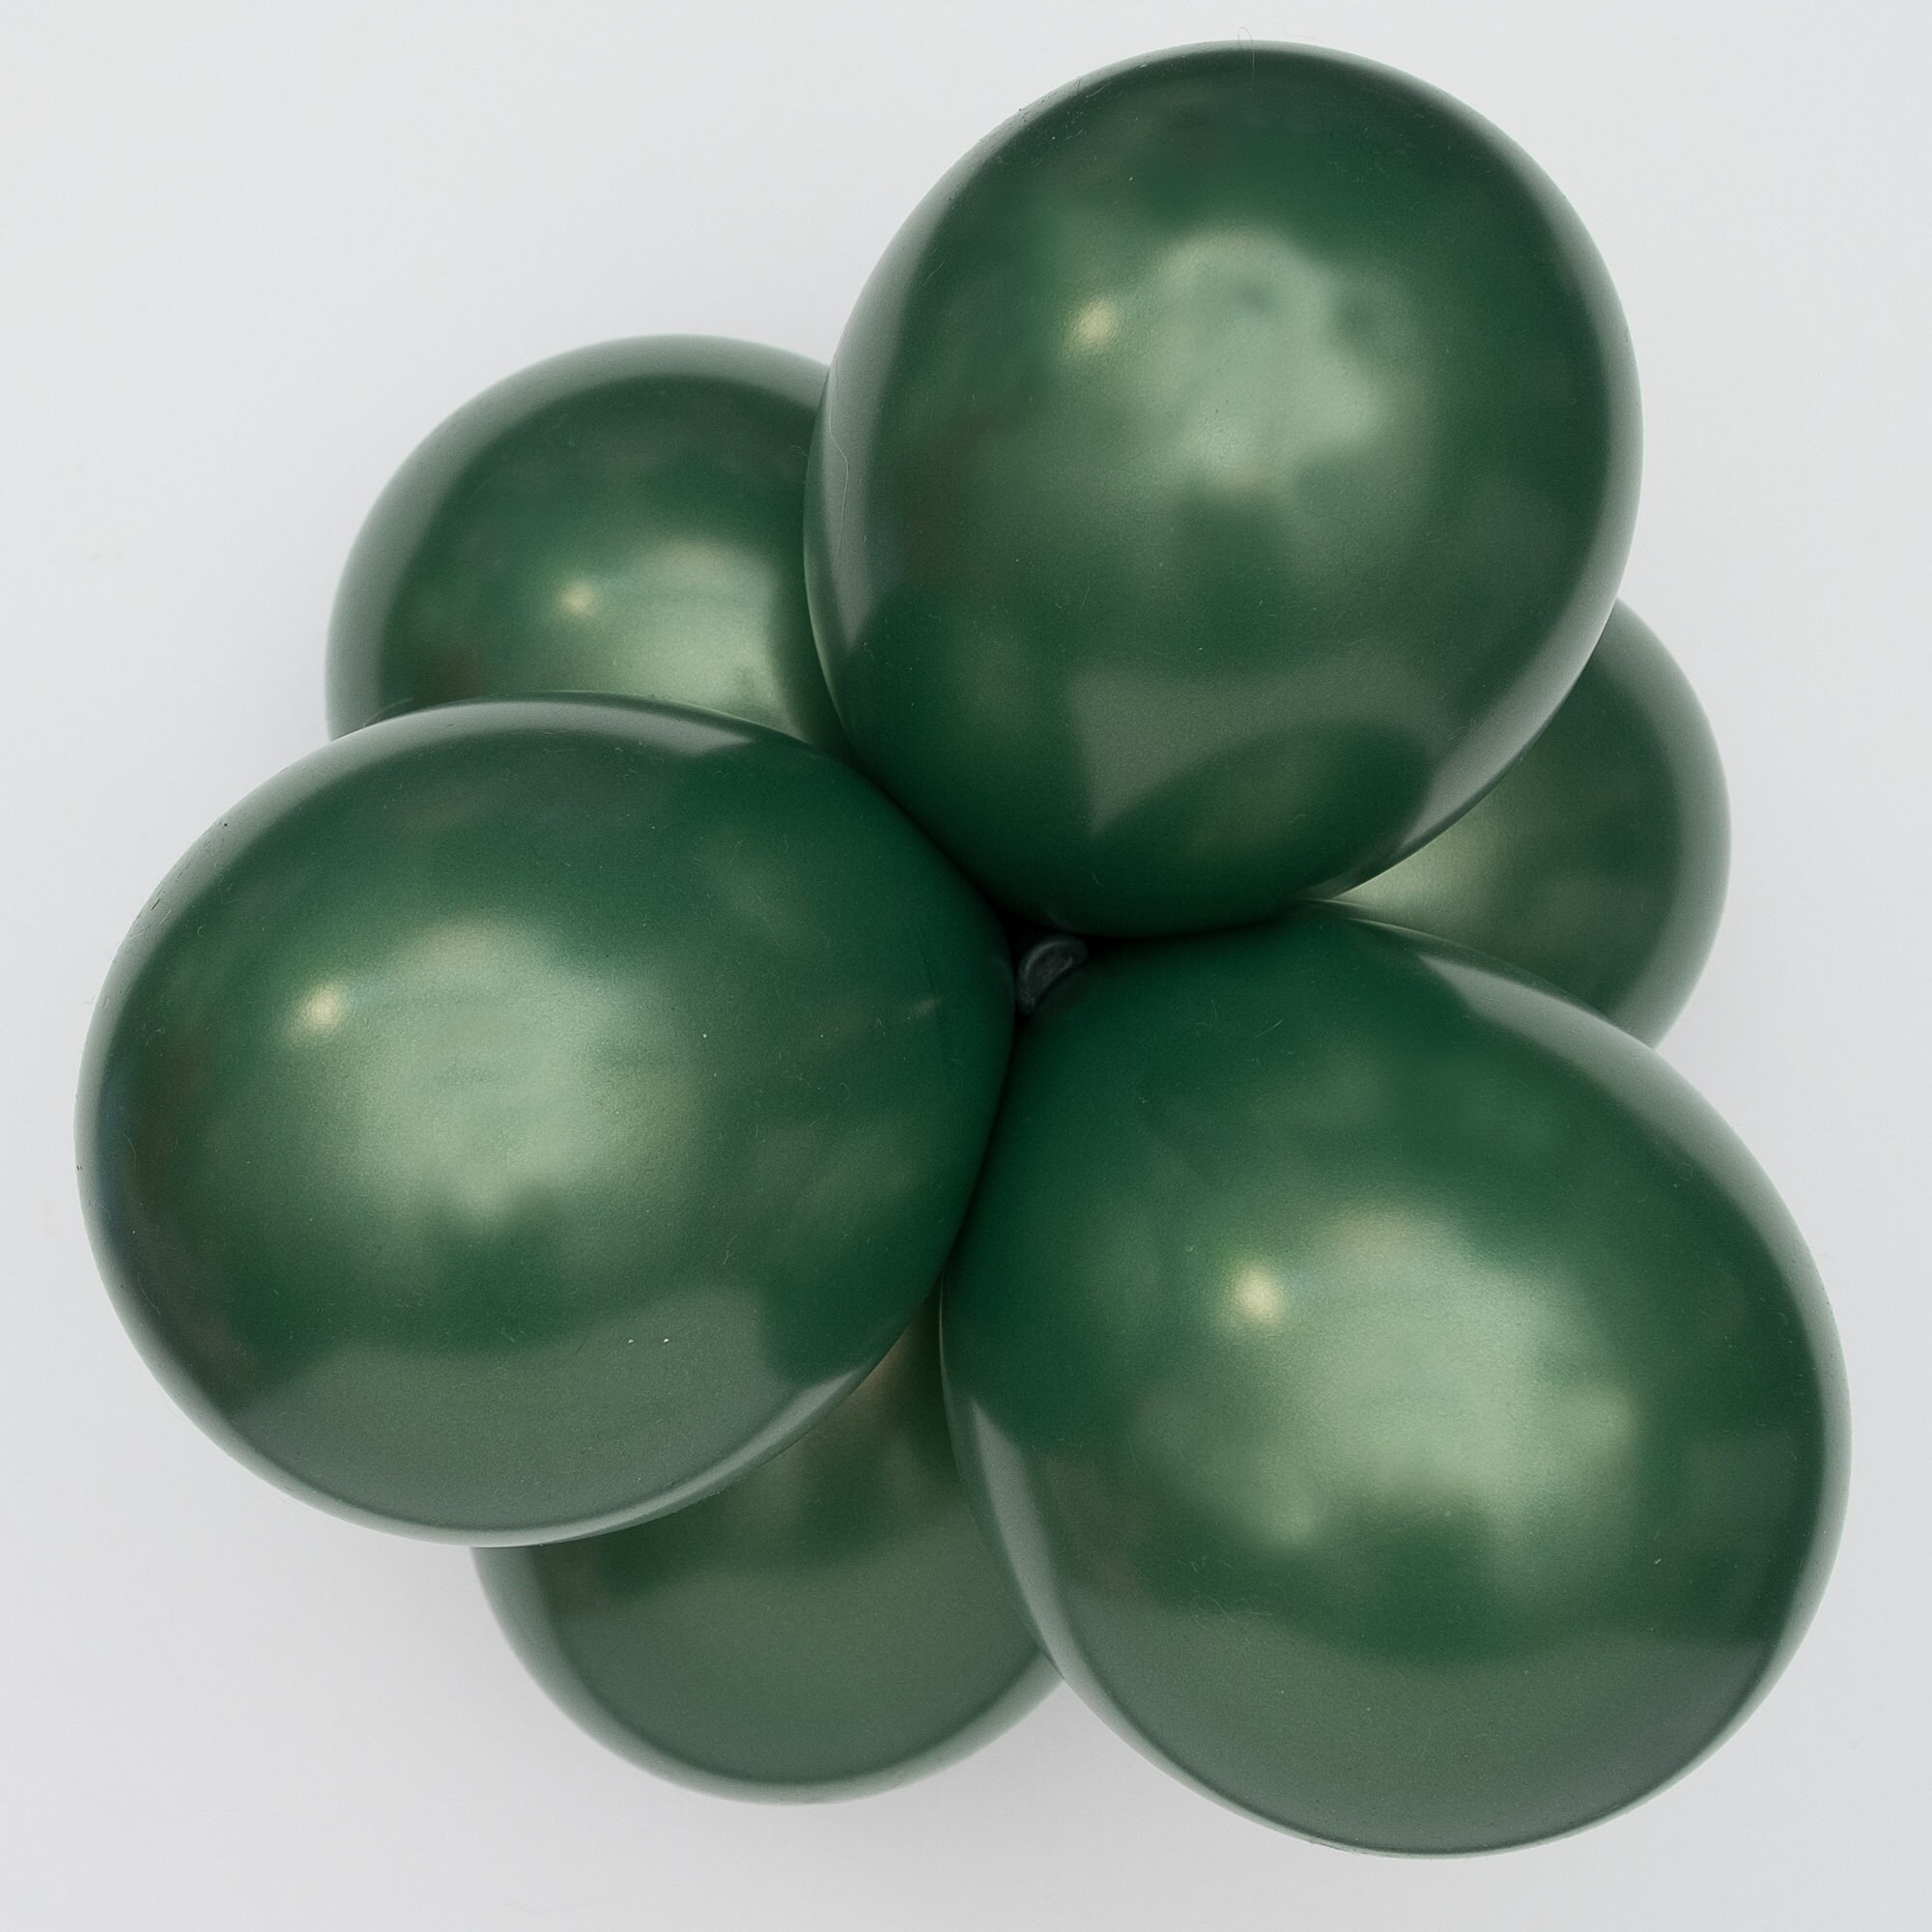 Ballon vert forêt latex 28 cm